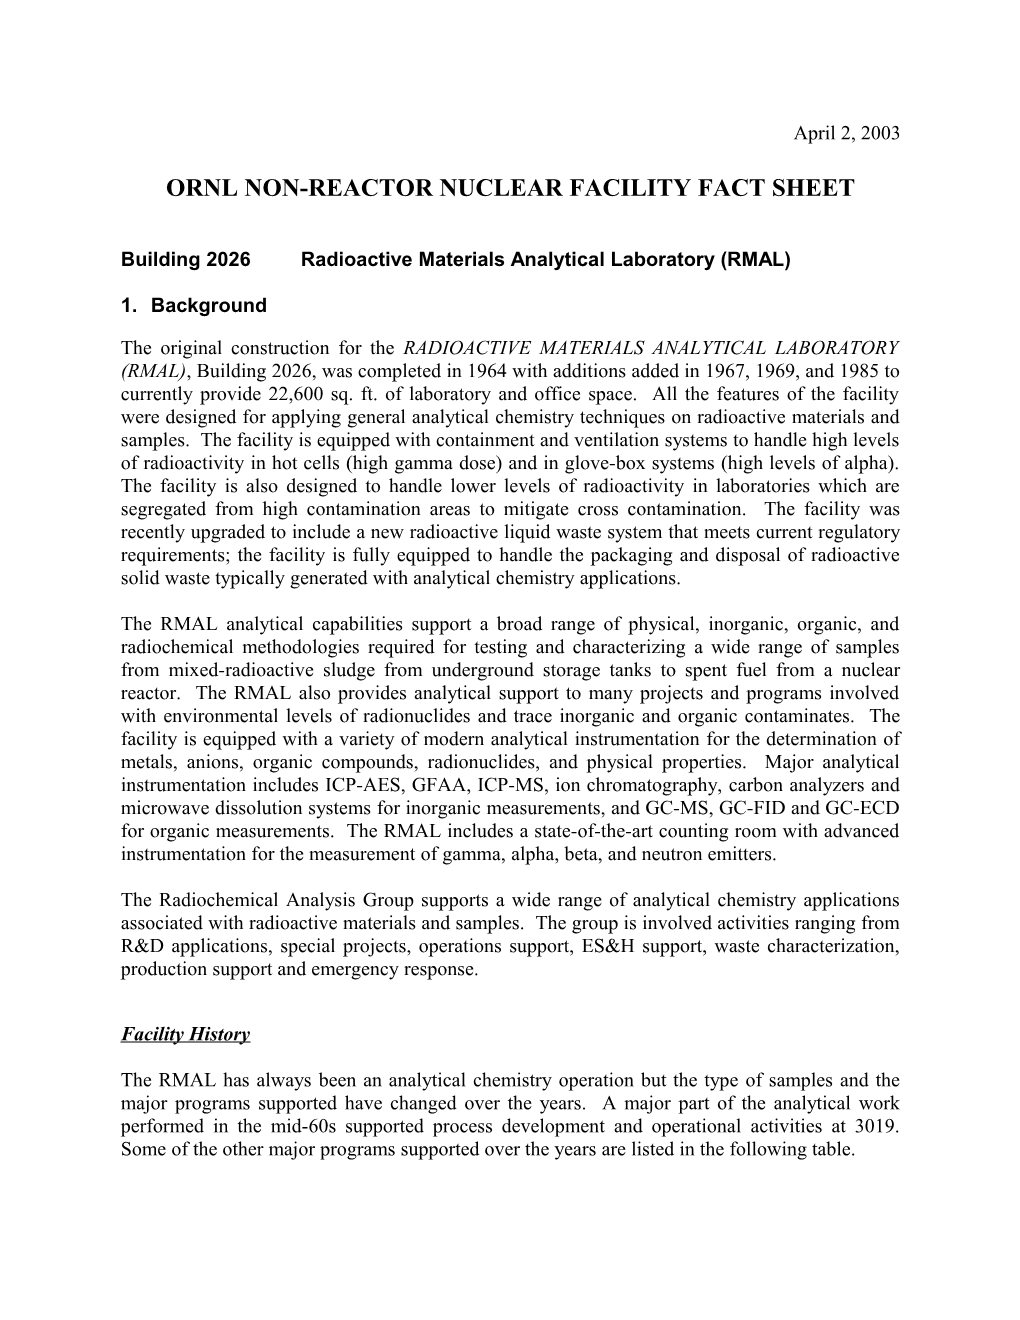 Ornl Non-Reactor Nuclear Facility Fact Sheet